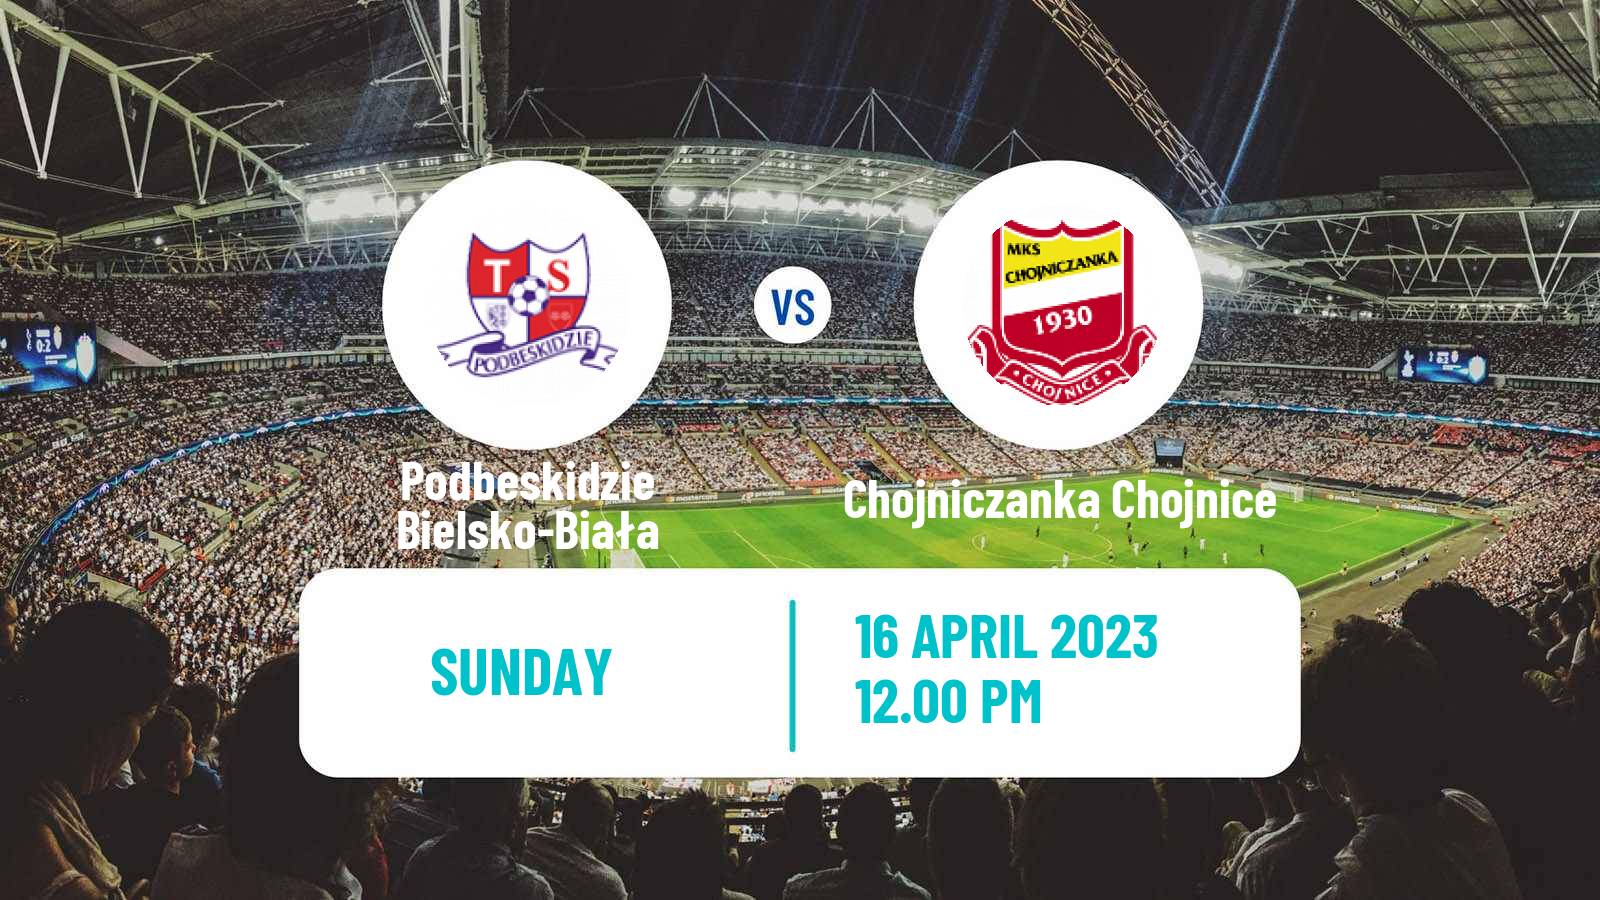 Soccer Polish Division 1 Podbeskidzie Bielsko-Biała - Chojniczanka Chojnice